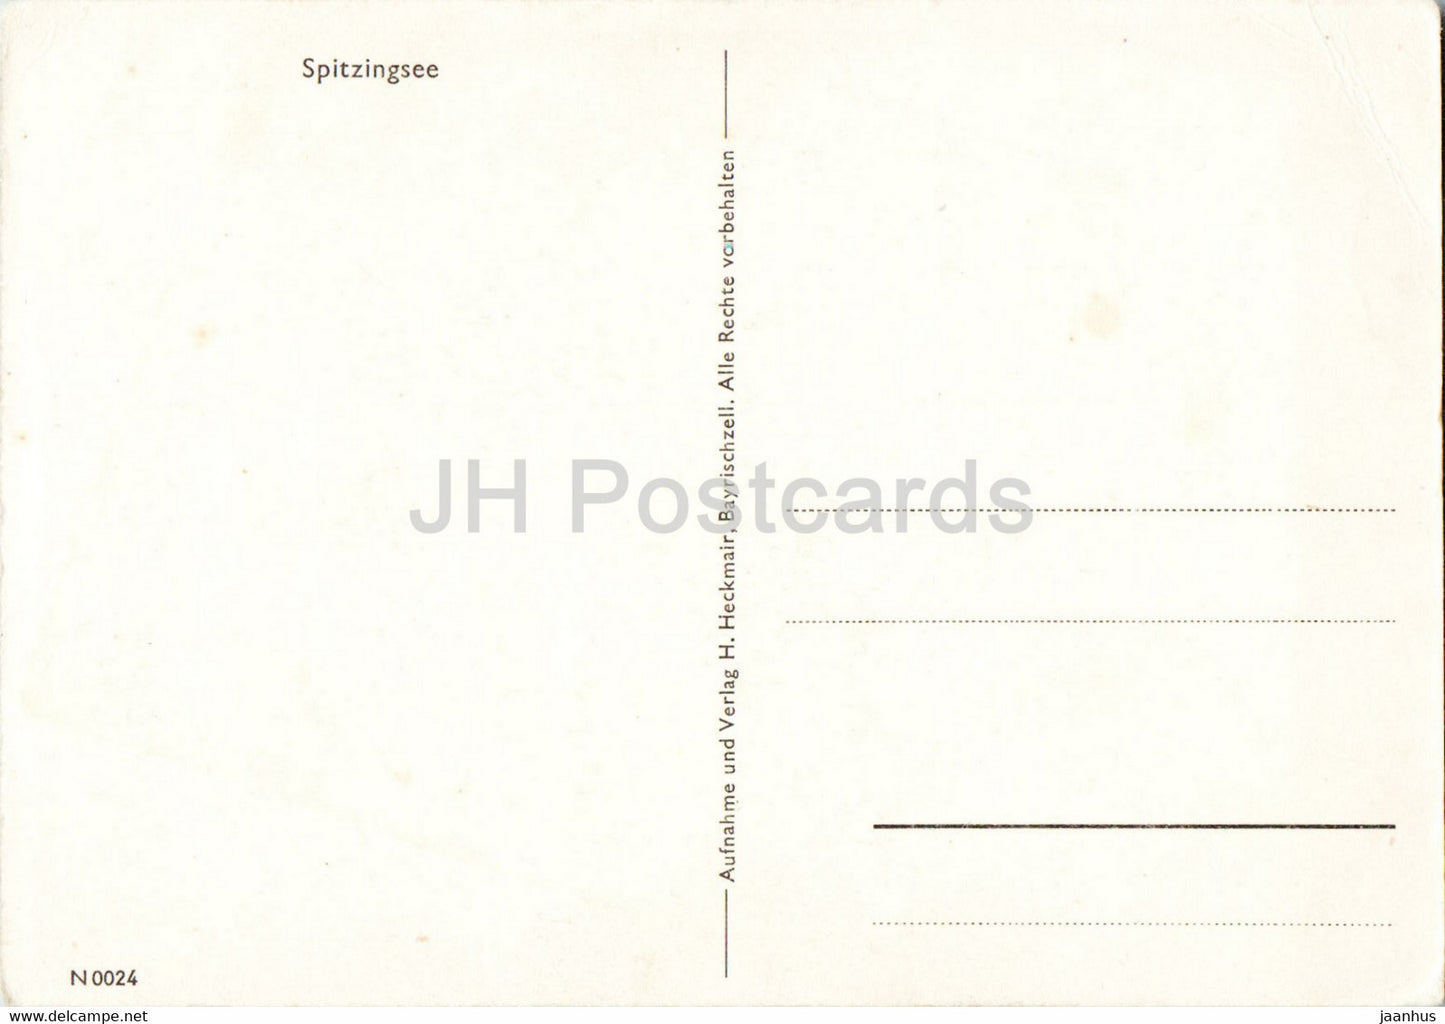 Spitzingsee - 0024 - alte Postkarte - Deutschland - unbenutzt